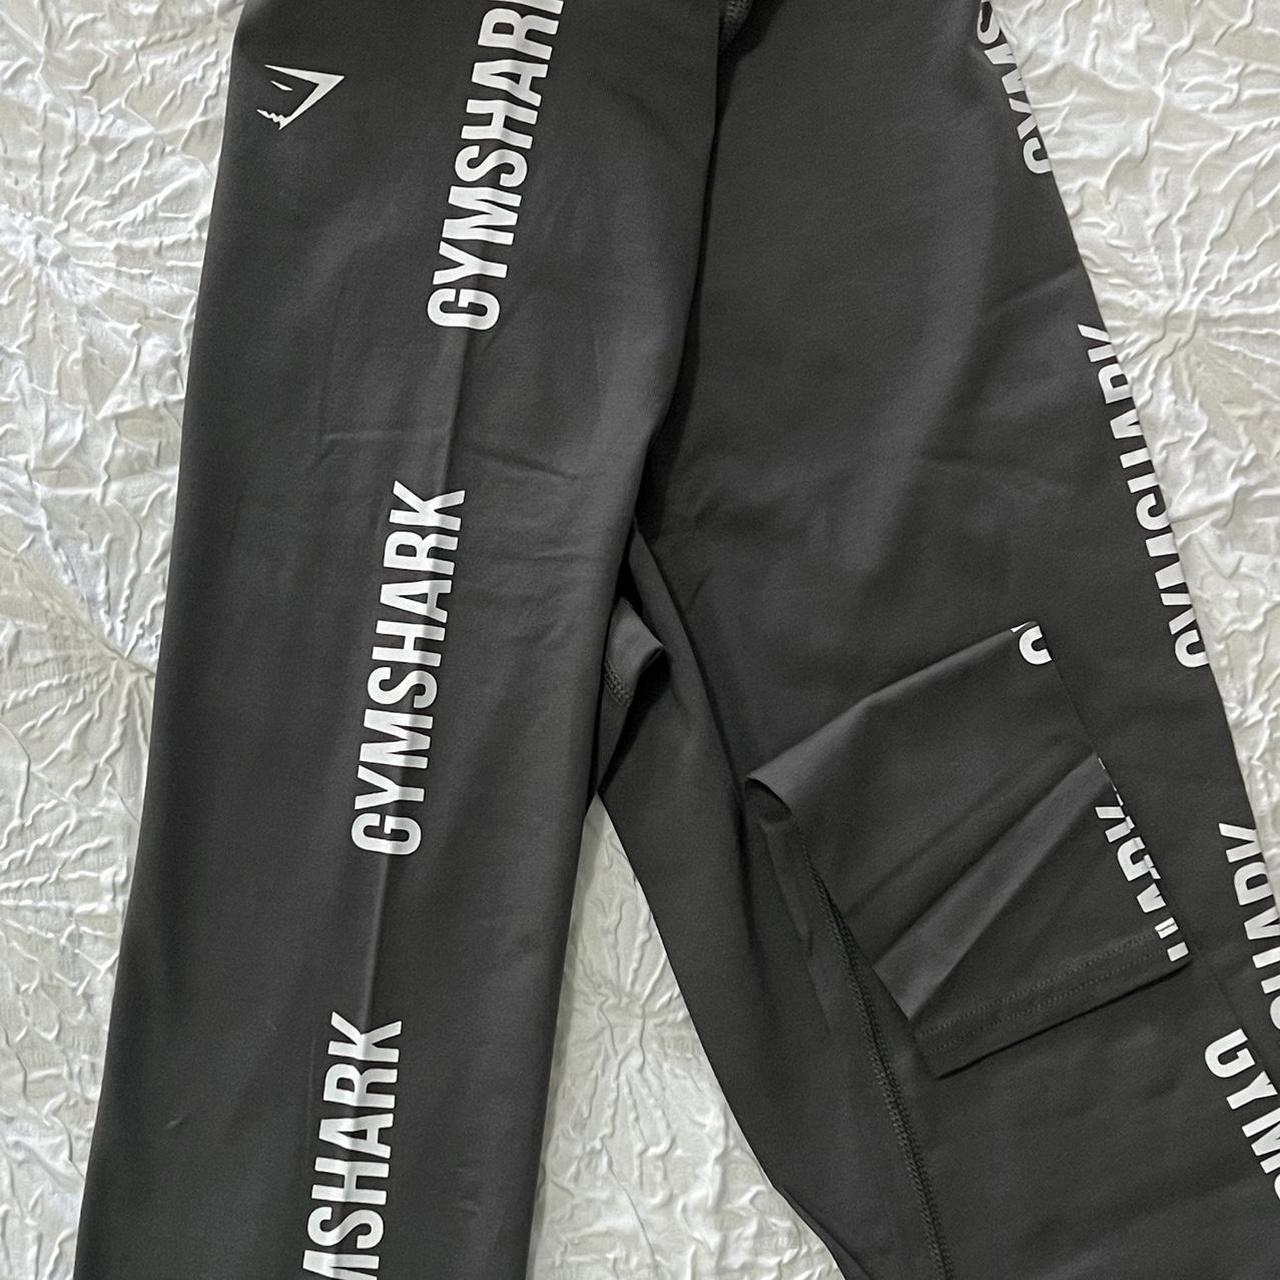 Gymshark Cotton Graphic Tape Leggings - Black